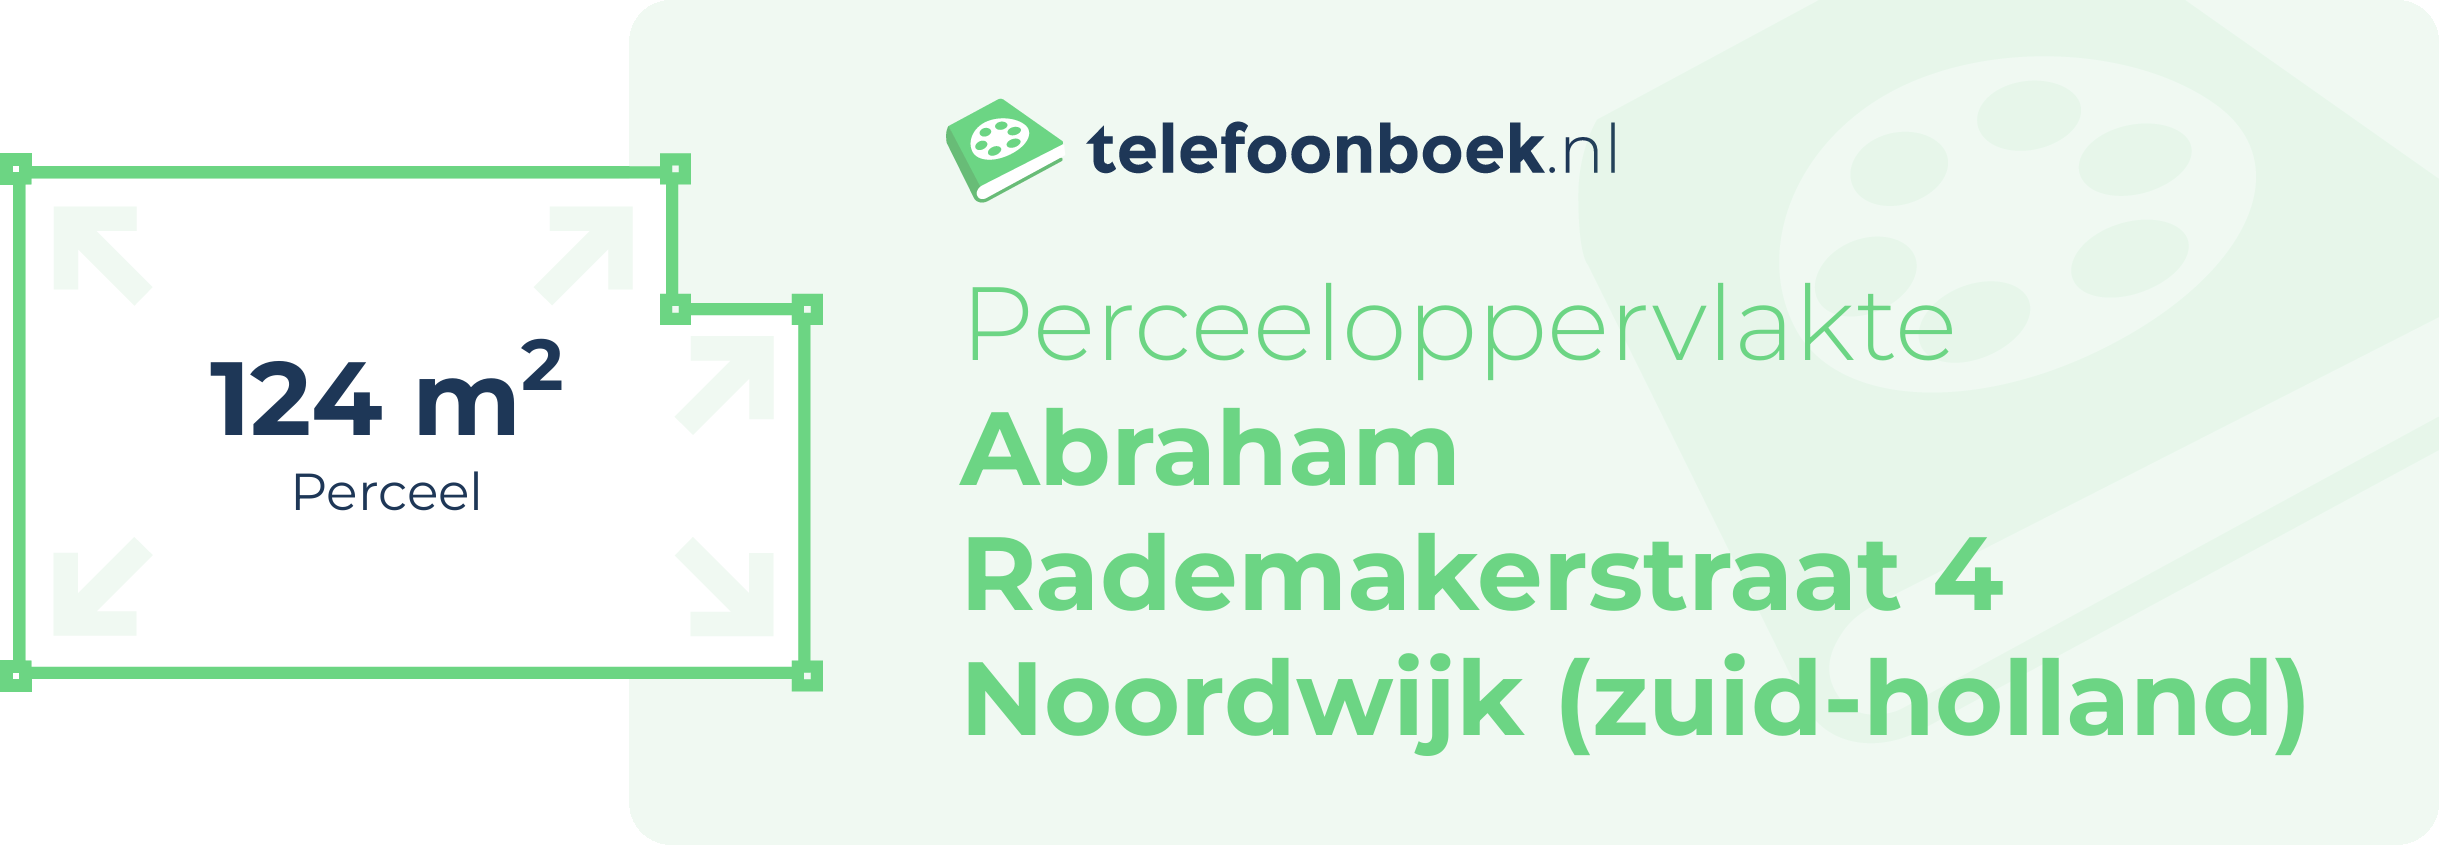 Perceeloppervlakte Abraham Rademakerstraat 4 Noordwijk (Zuid-Holland)